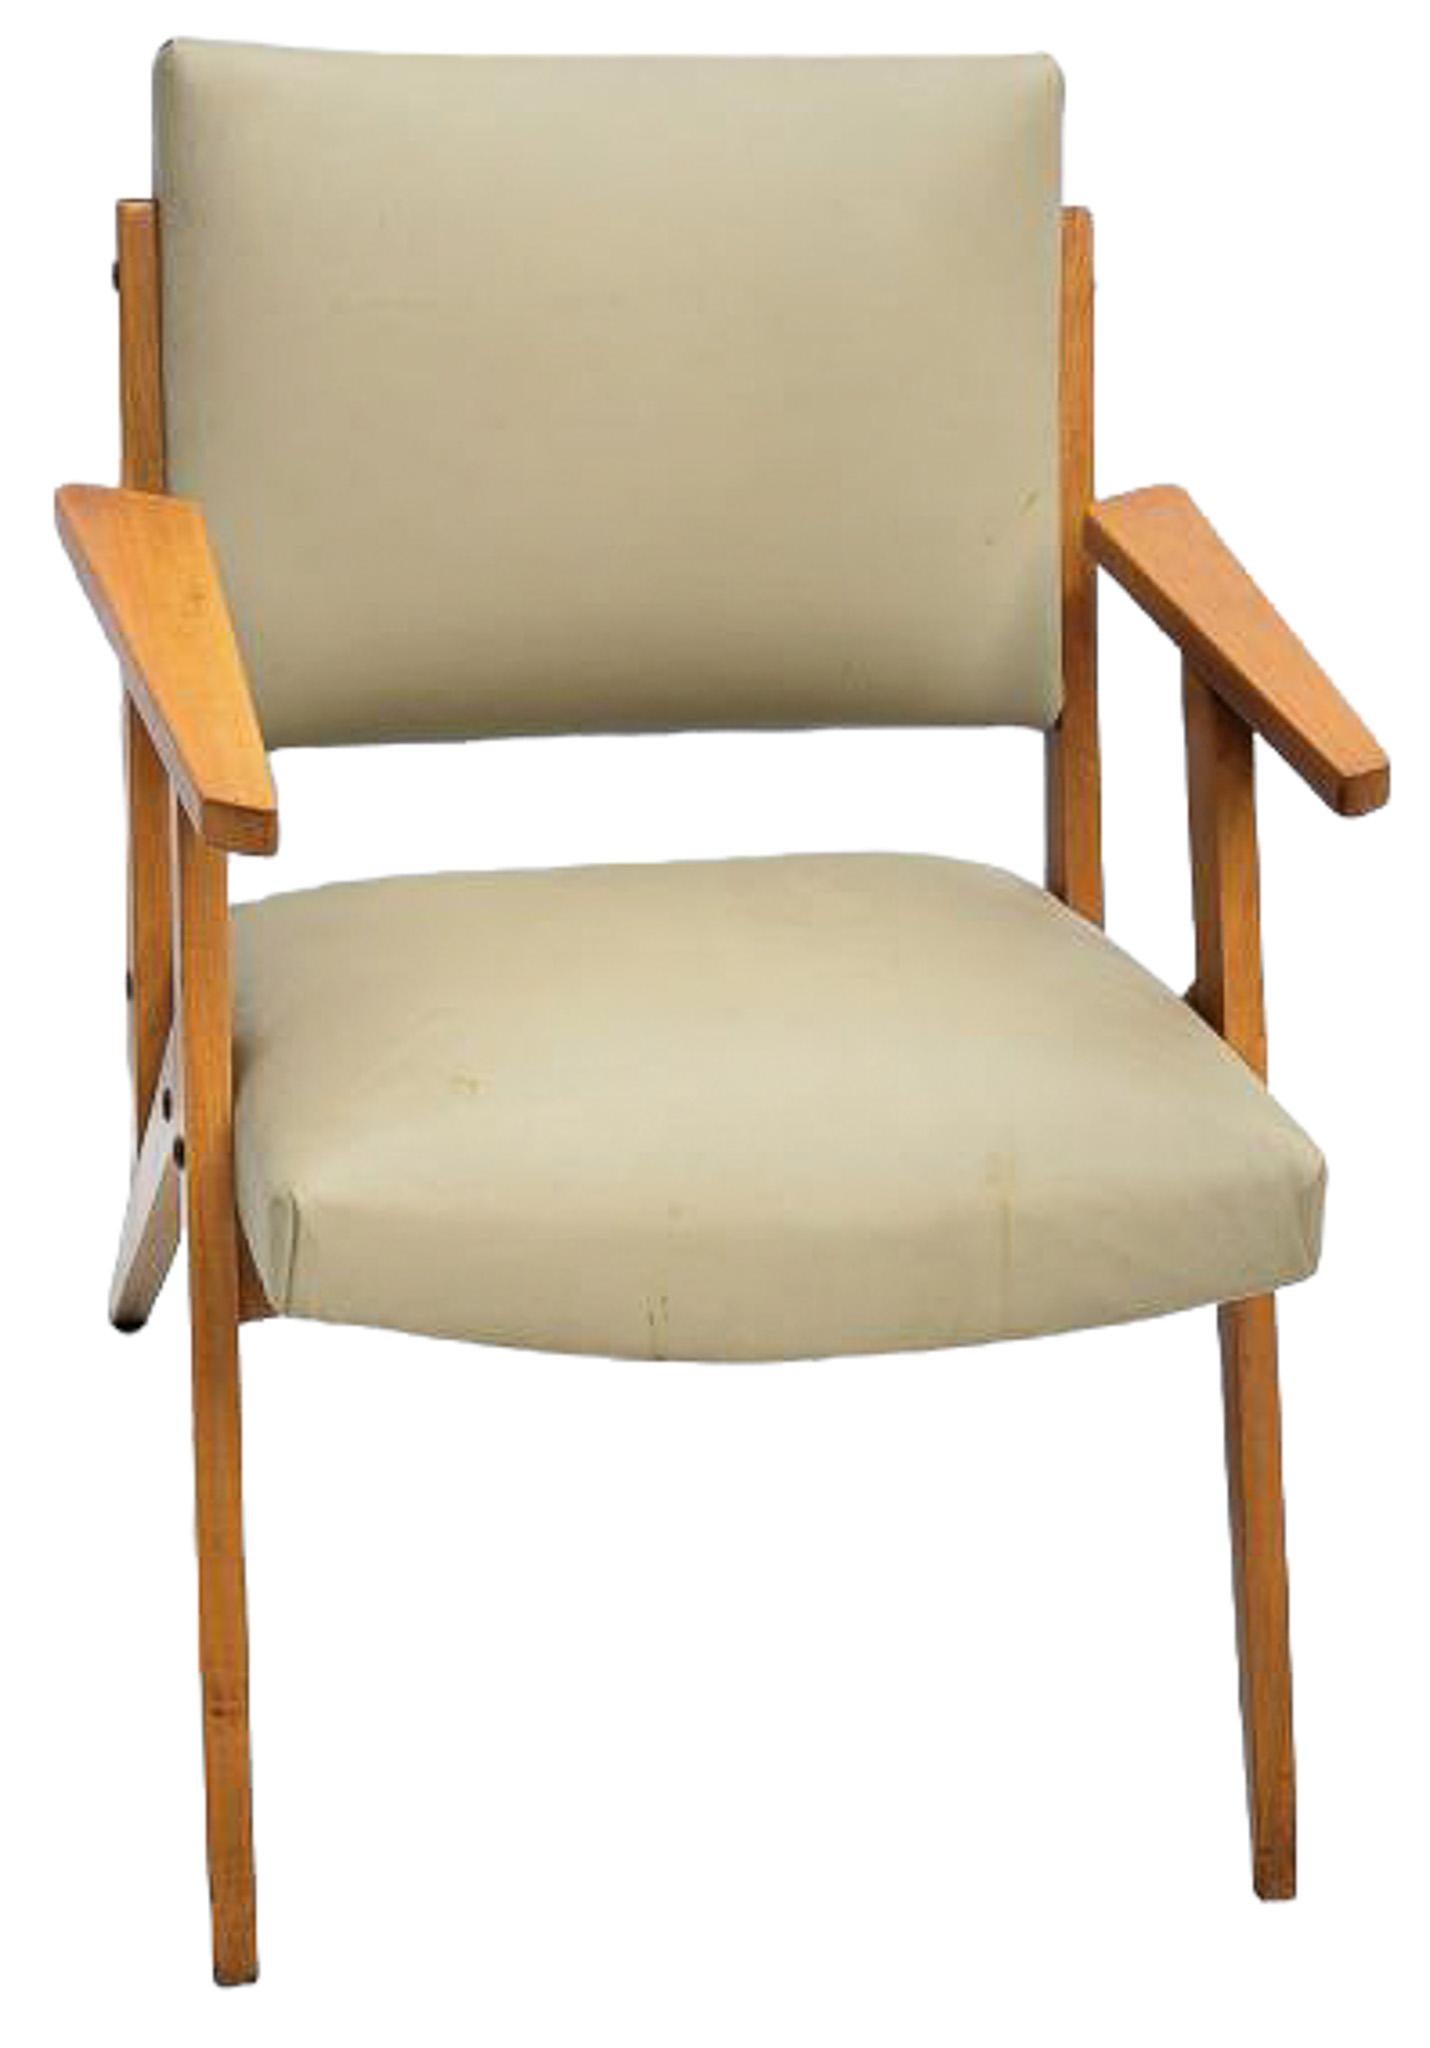 Brazilian Modern Armchair in Wood & Mint Faux Leather, Jose Zanine Caldas, 1950s For Sale 5